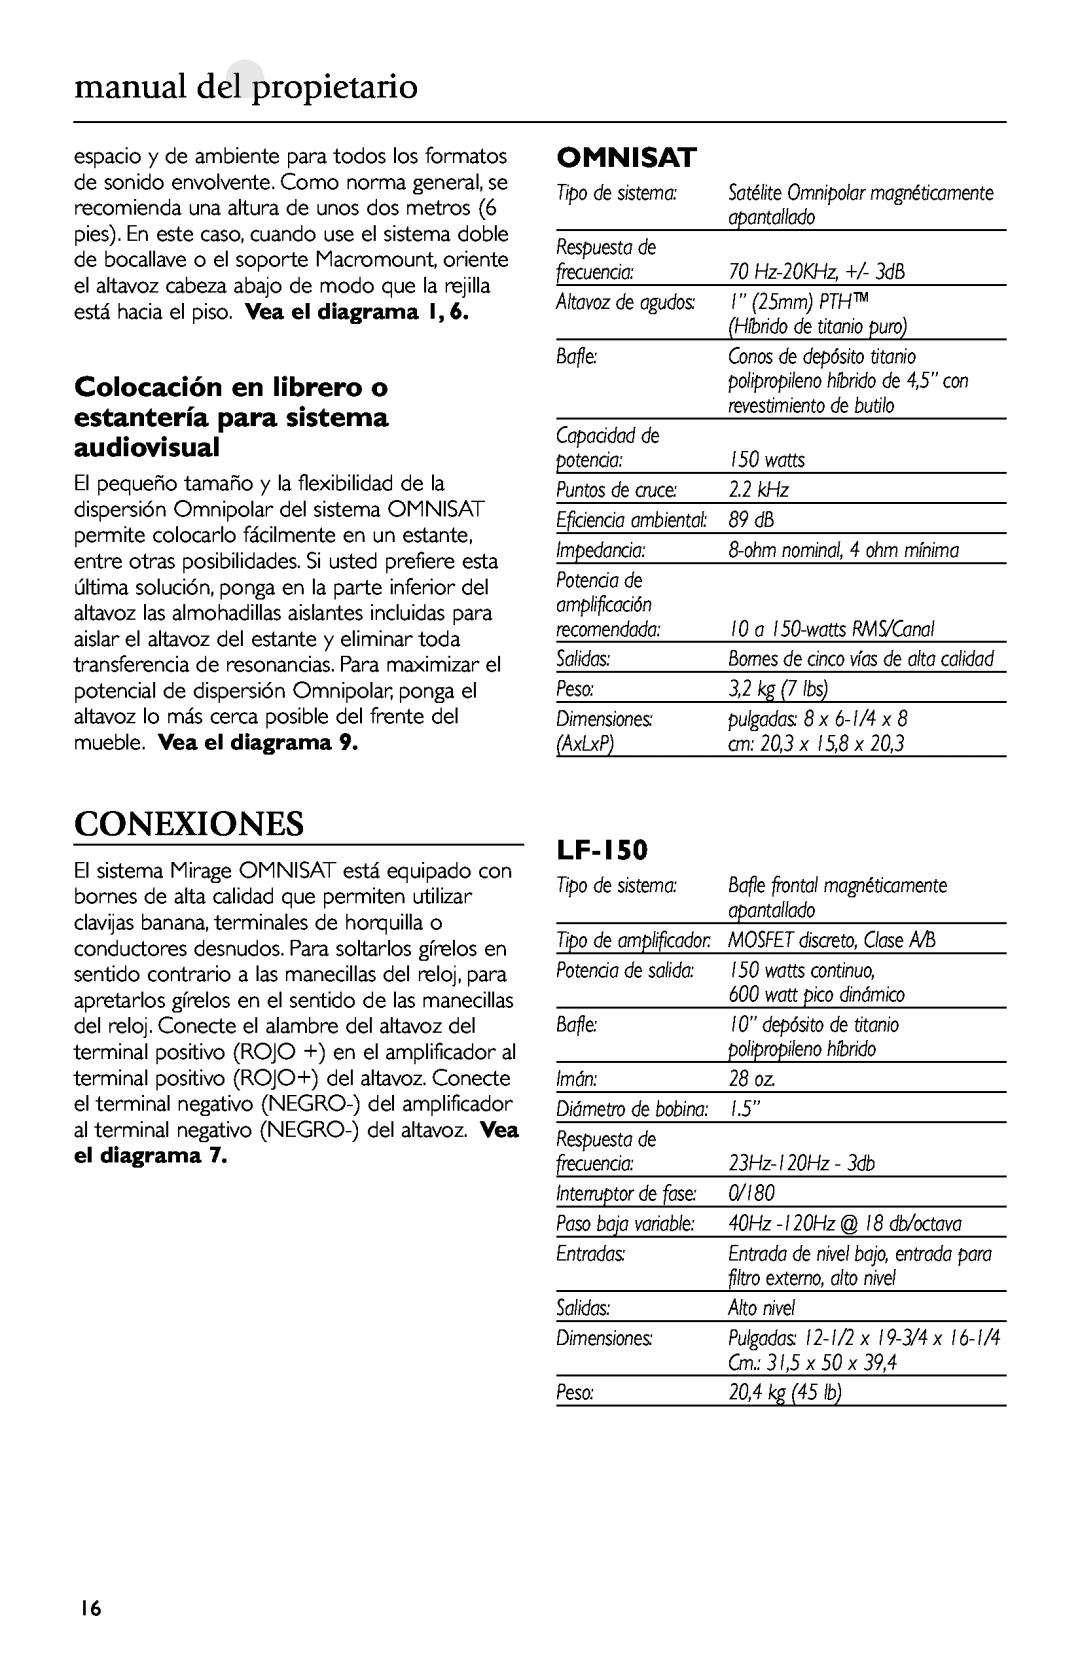 Mirage Loudspeakers Omnisat owner manual manual del propietario, Conexiones, LF-150 